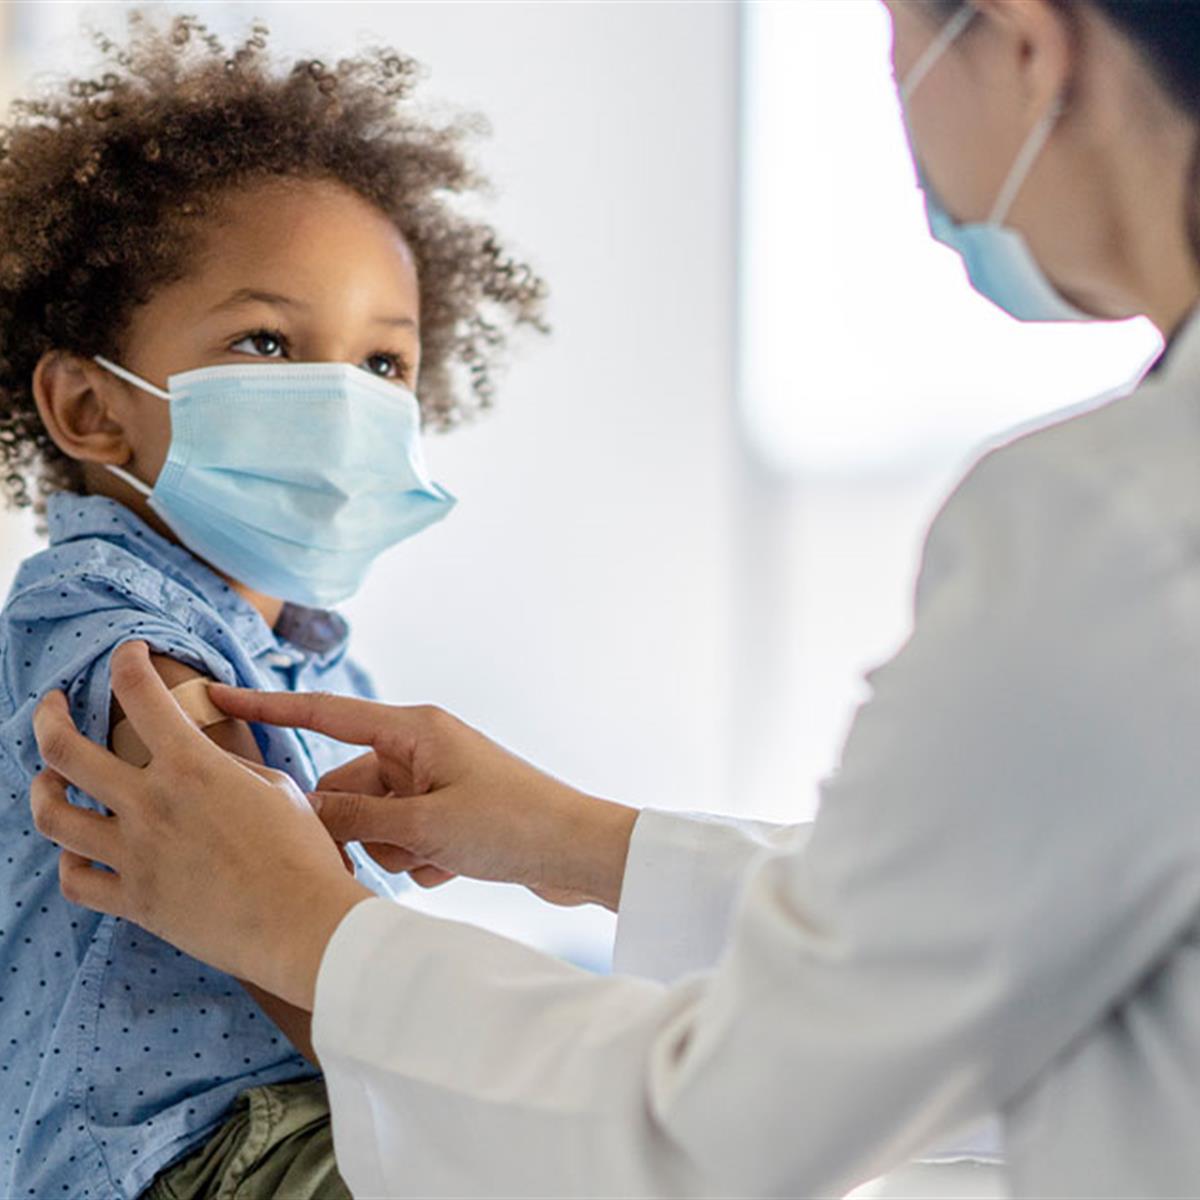 हिमोफिलस वैक्सीन को मिला ग्रीन टिक, बच्चों का  निमोनिया-गठिया के गंभीर संक्रमण से करेगी बचाव